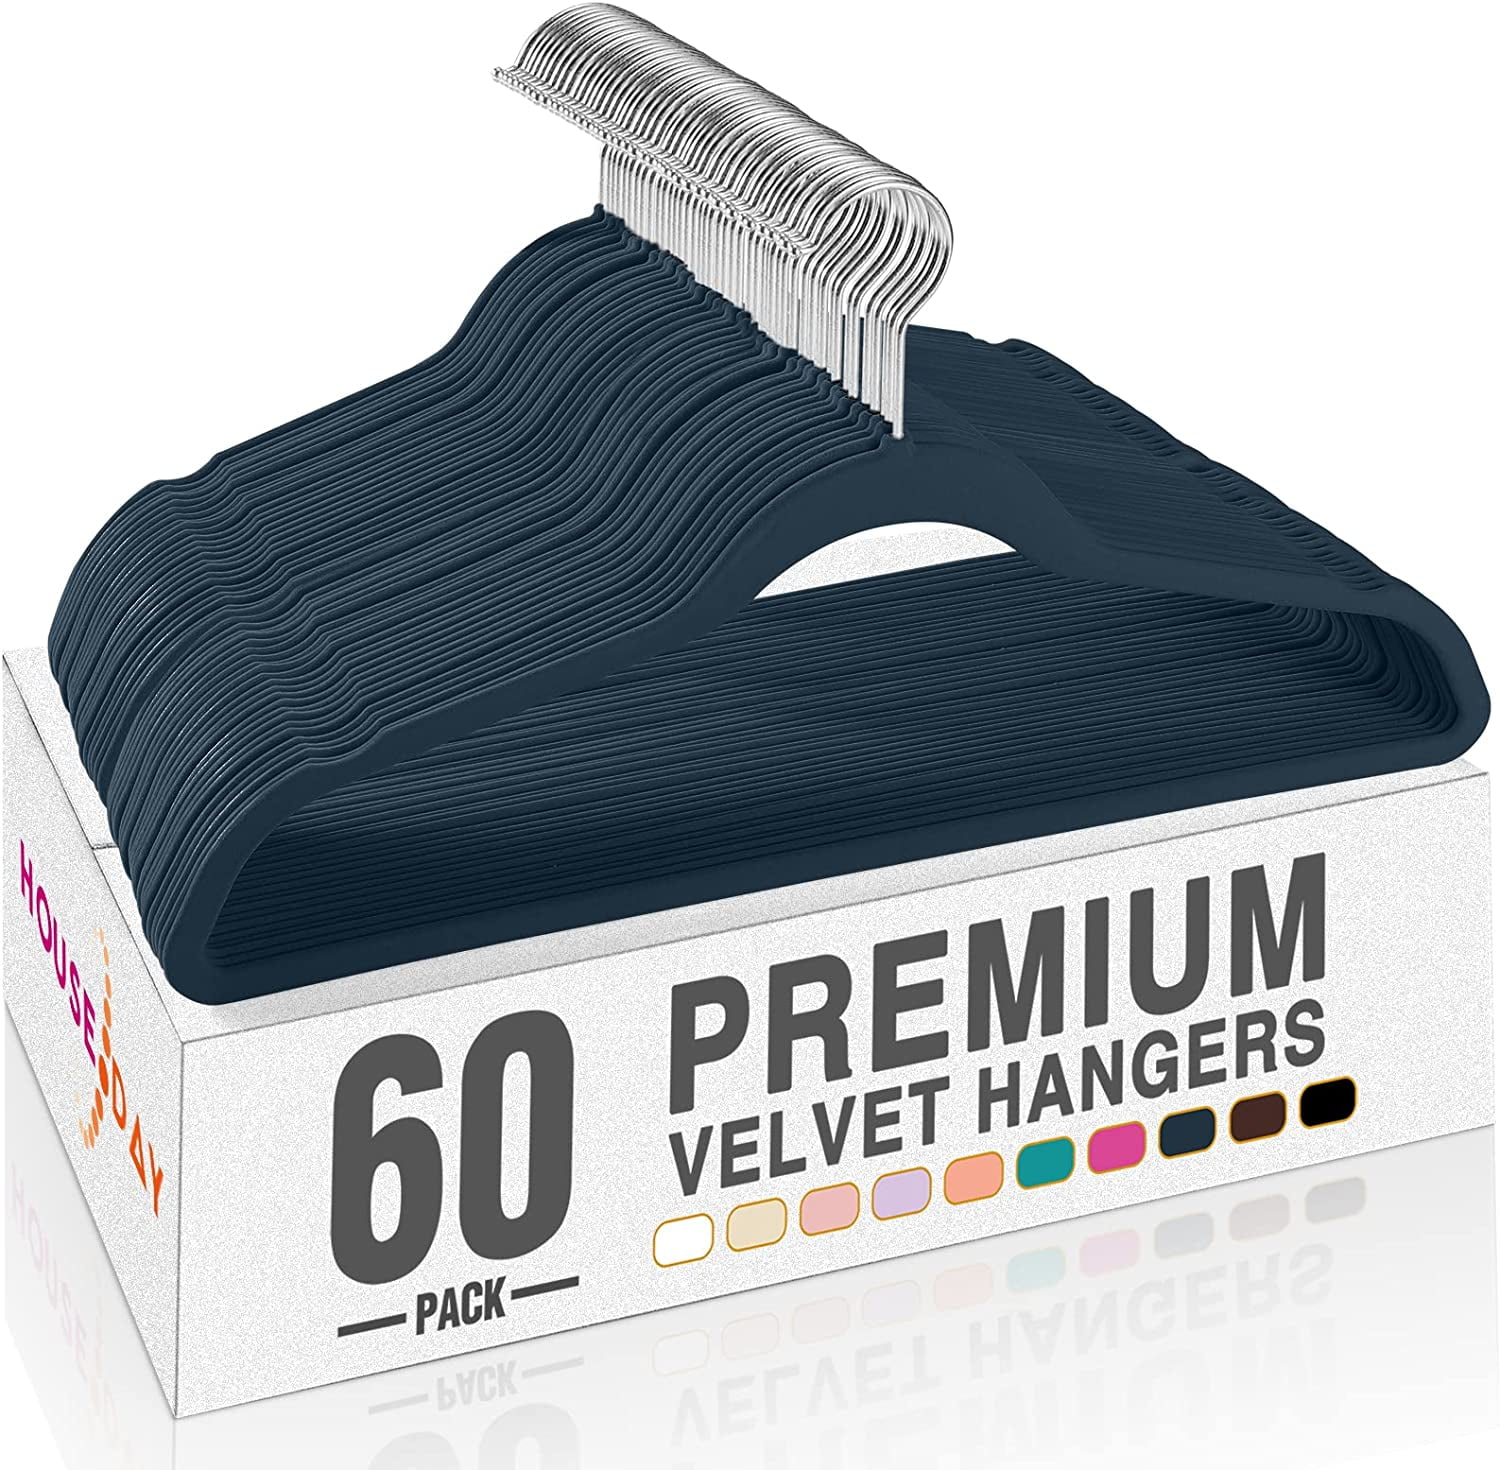  HOUSE DAY Black Velvet Hangers 60 Pack, Premium